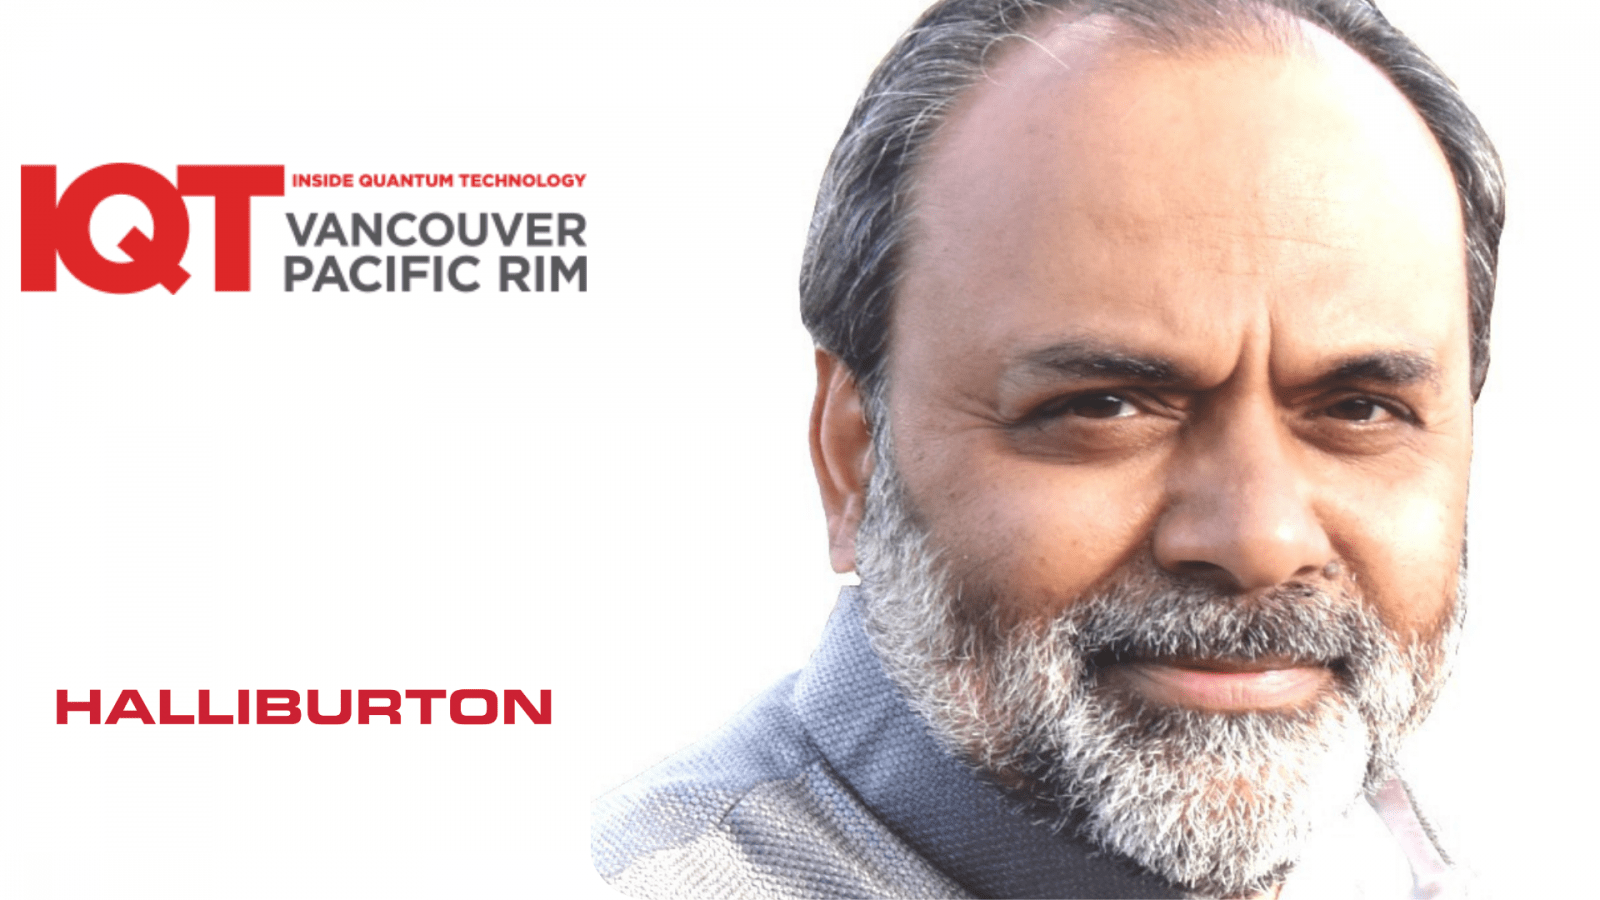 Halliburtoni tehnoloogia stipendiaat ja andmeteadlane Satyam Priyadarshy on IQT Vancouver/Pacific Rim 2024 kõlar – Quantum Technology sees